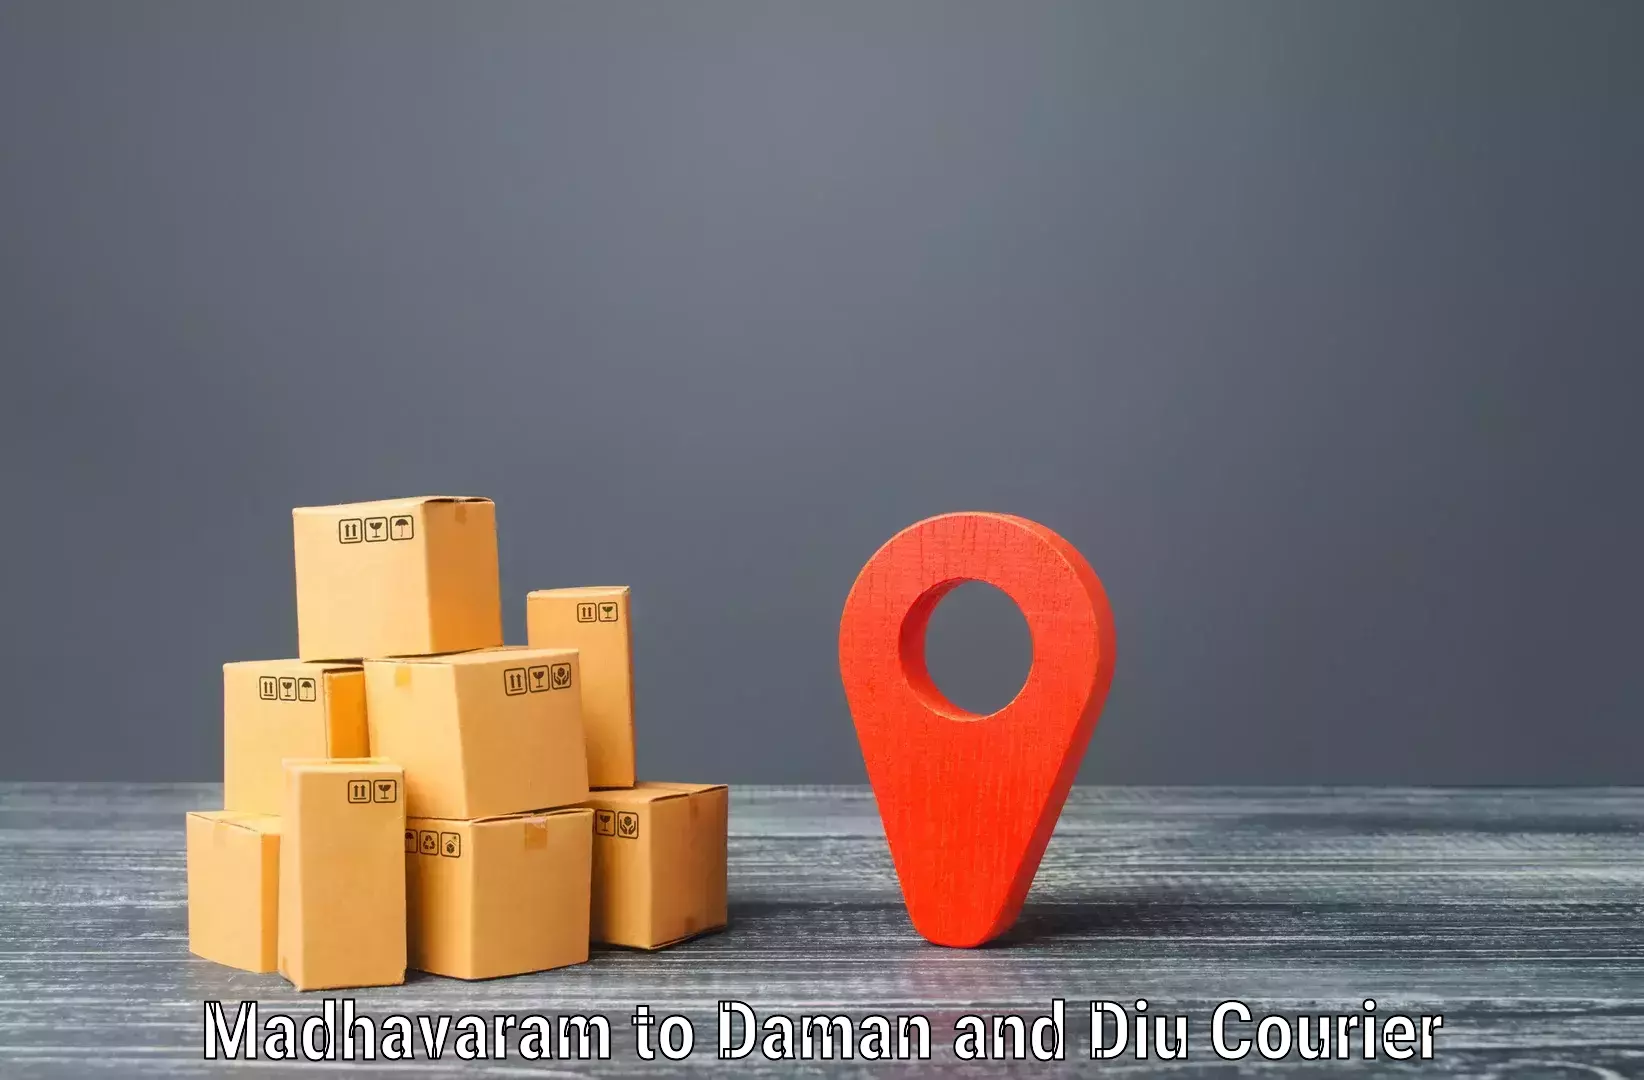 Efficient logistics management Madhavaram to Daman and Diu